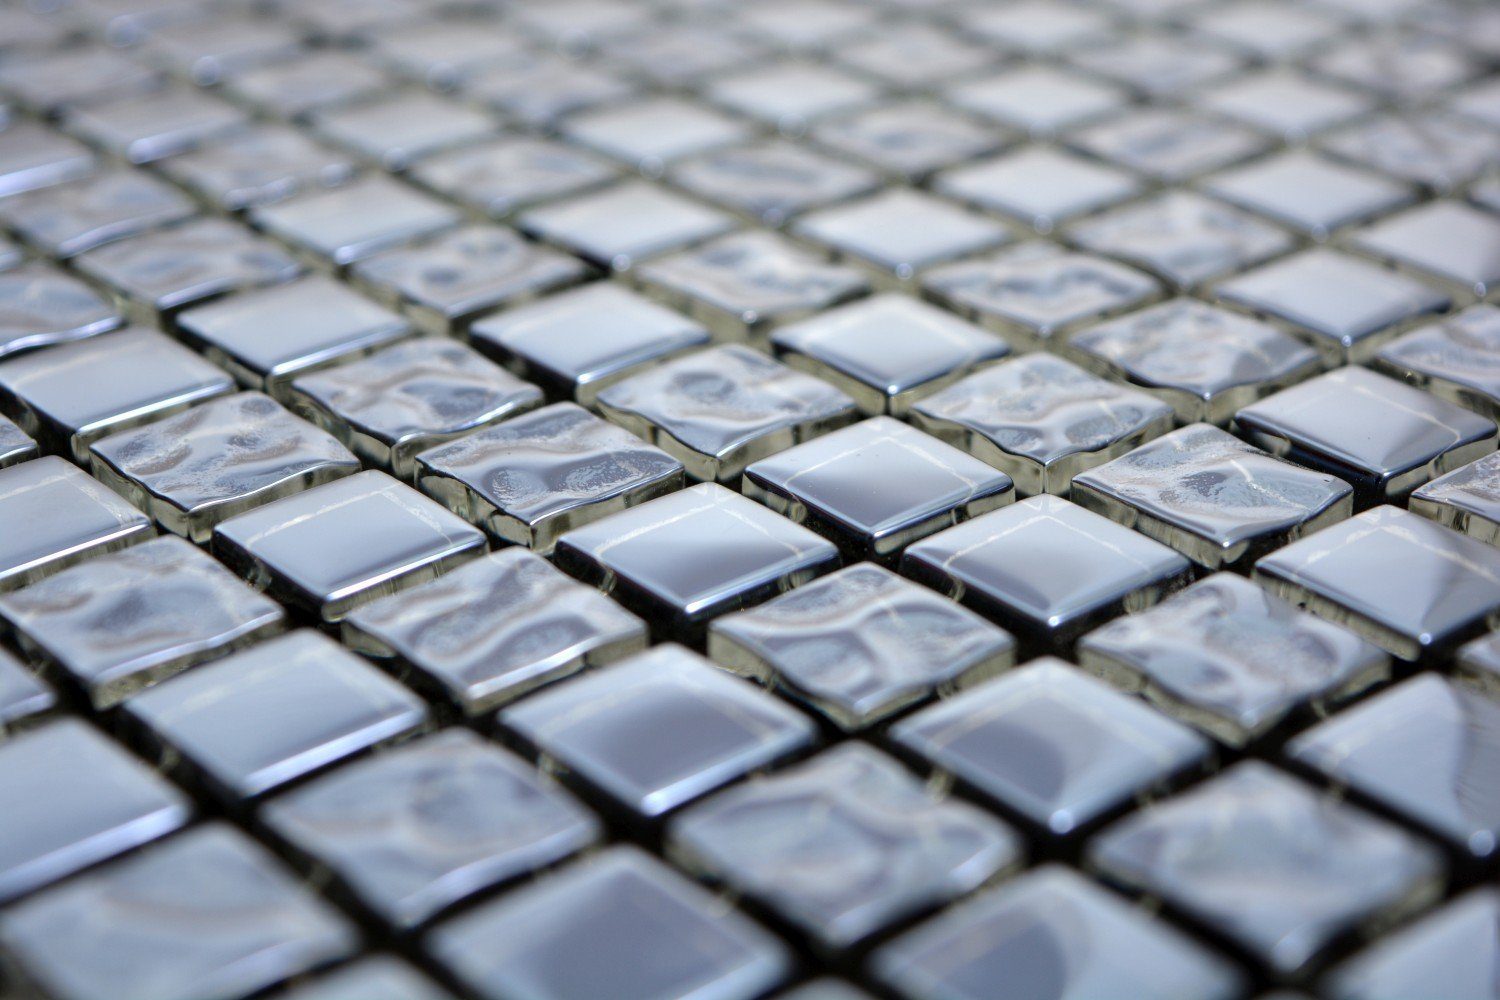 Mosani Mosaikfliesen Mosaikfliese platin BAD Platin electroplated Glasmosaik Glas